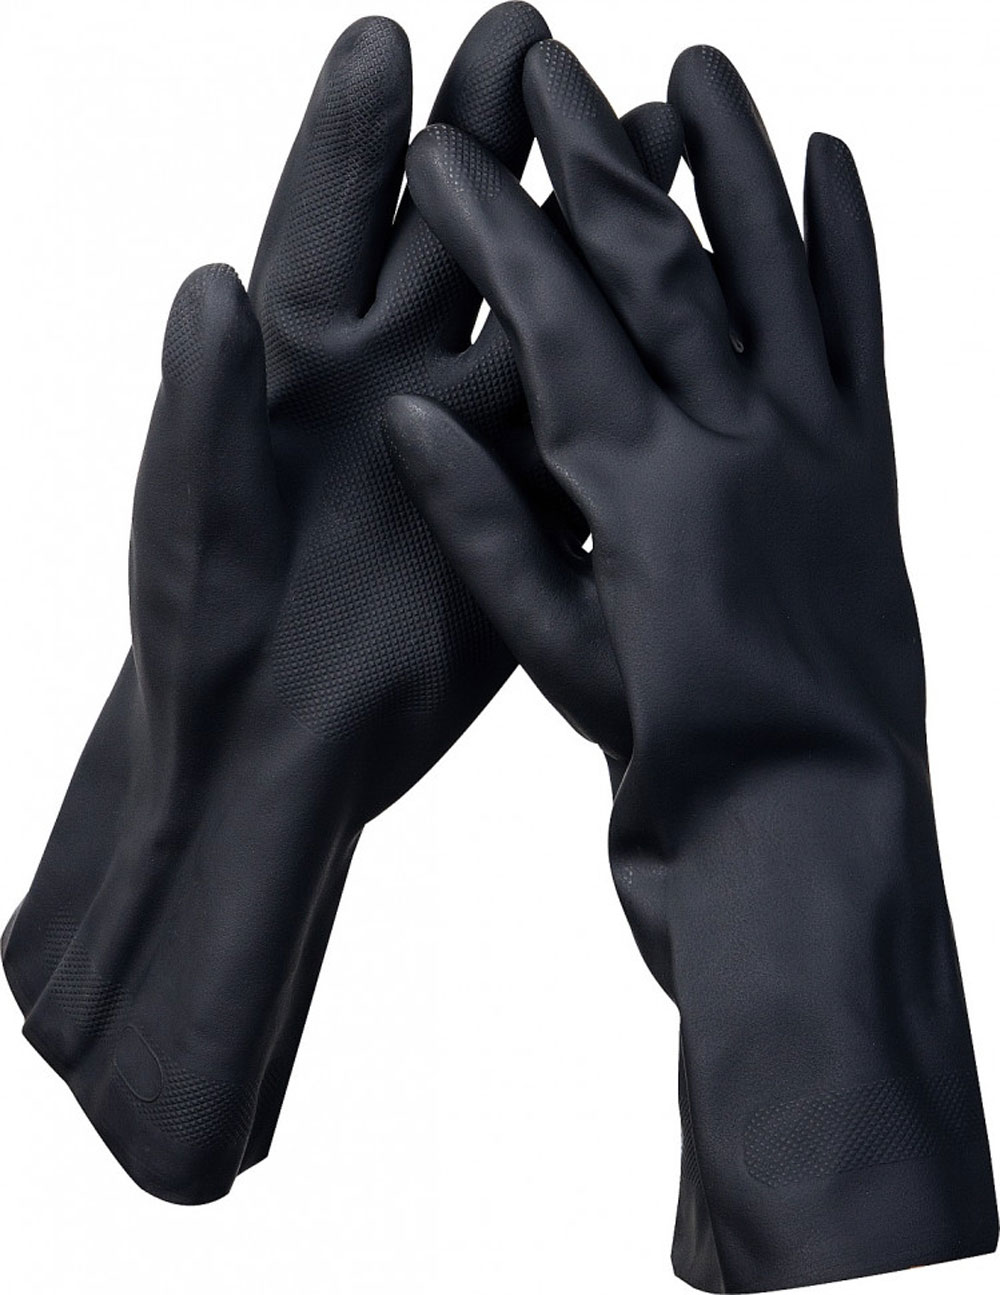 Противокислотные перчатки KRAFTOOL Neopren р. XL неопреновые индустриальные (11282-XL_z01)Купить